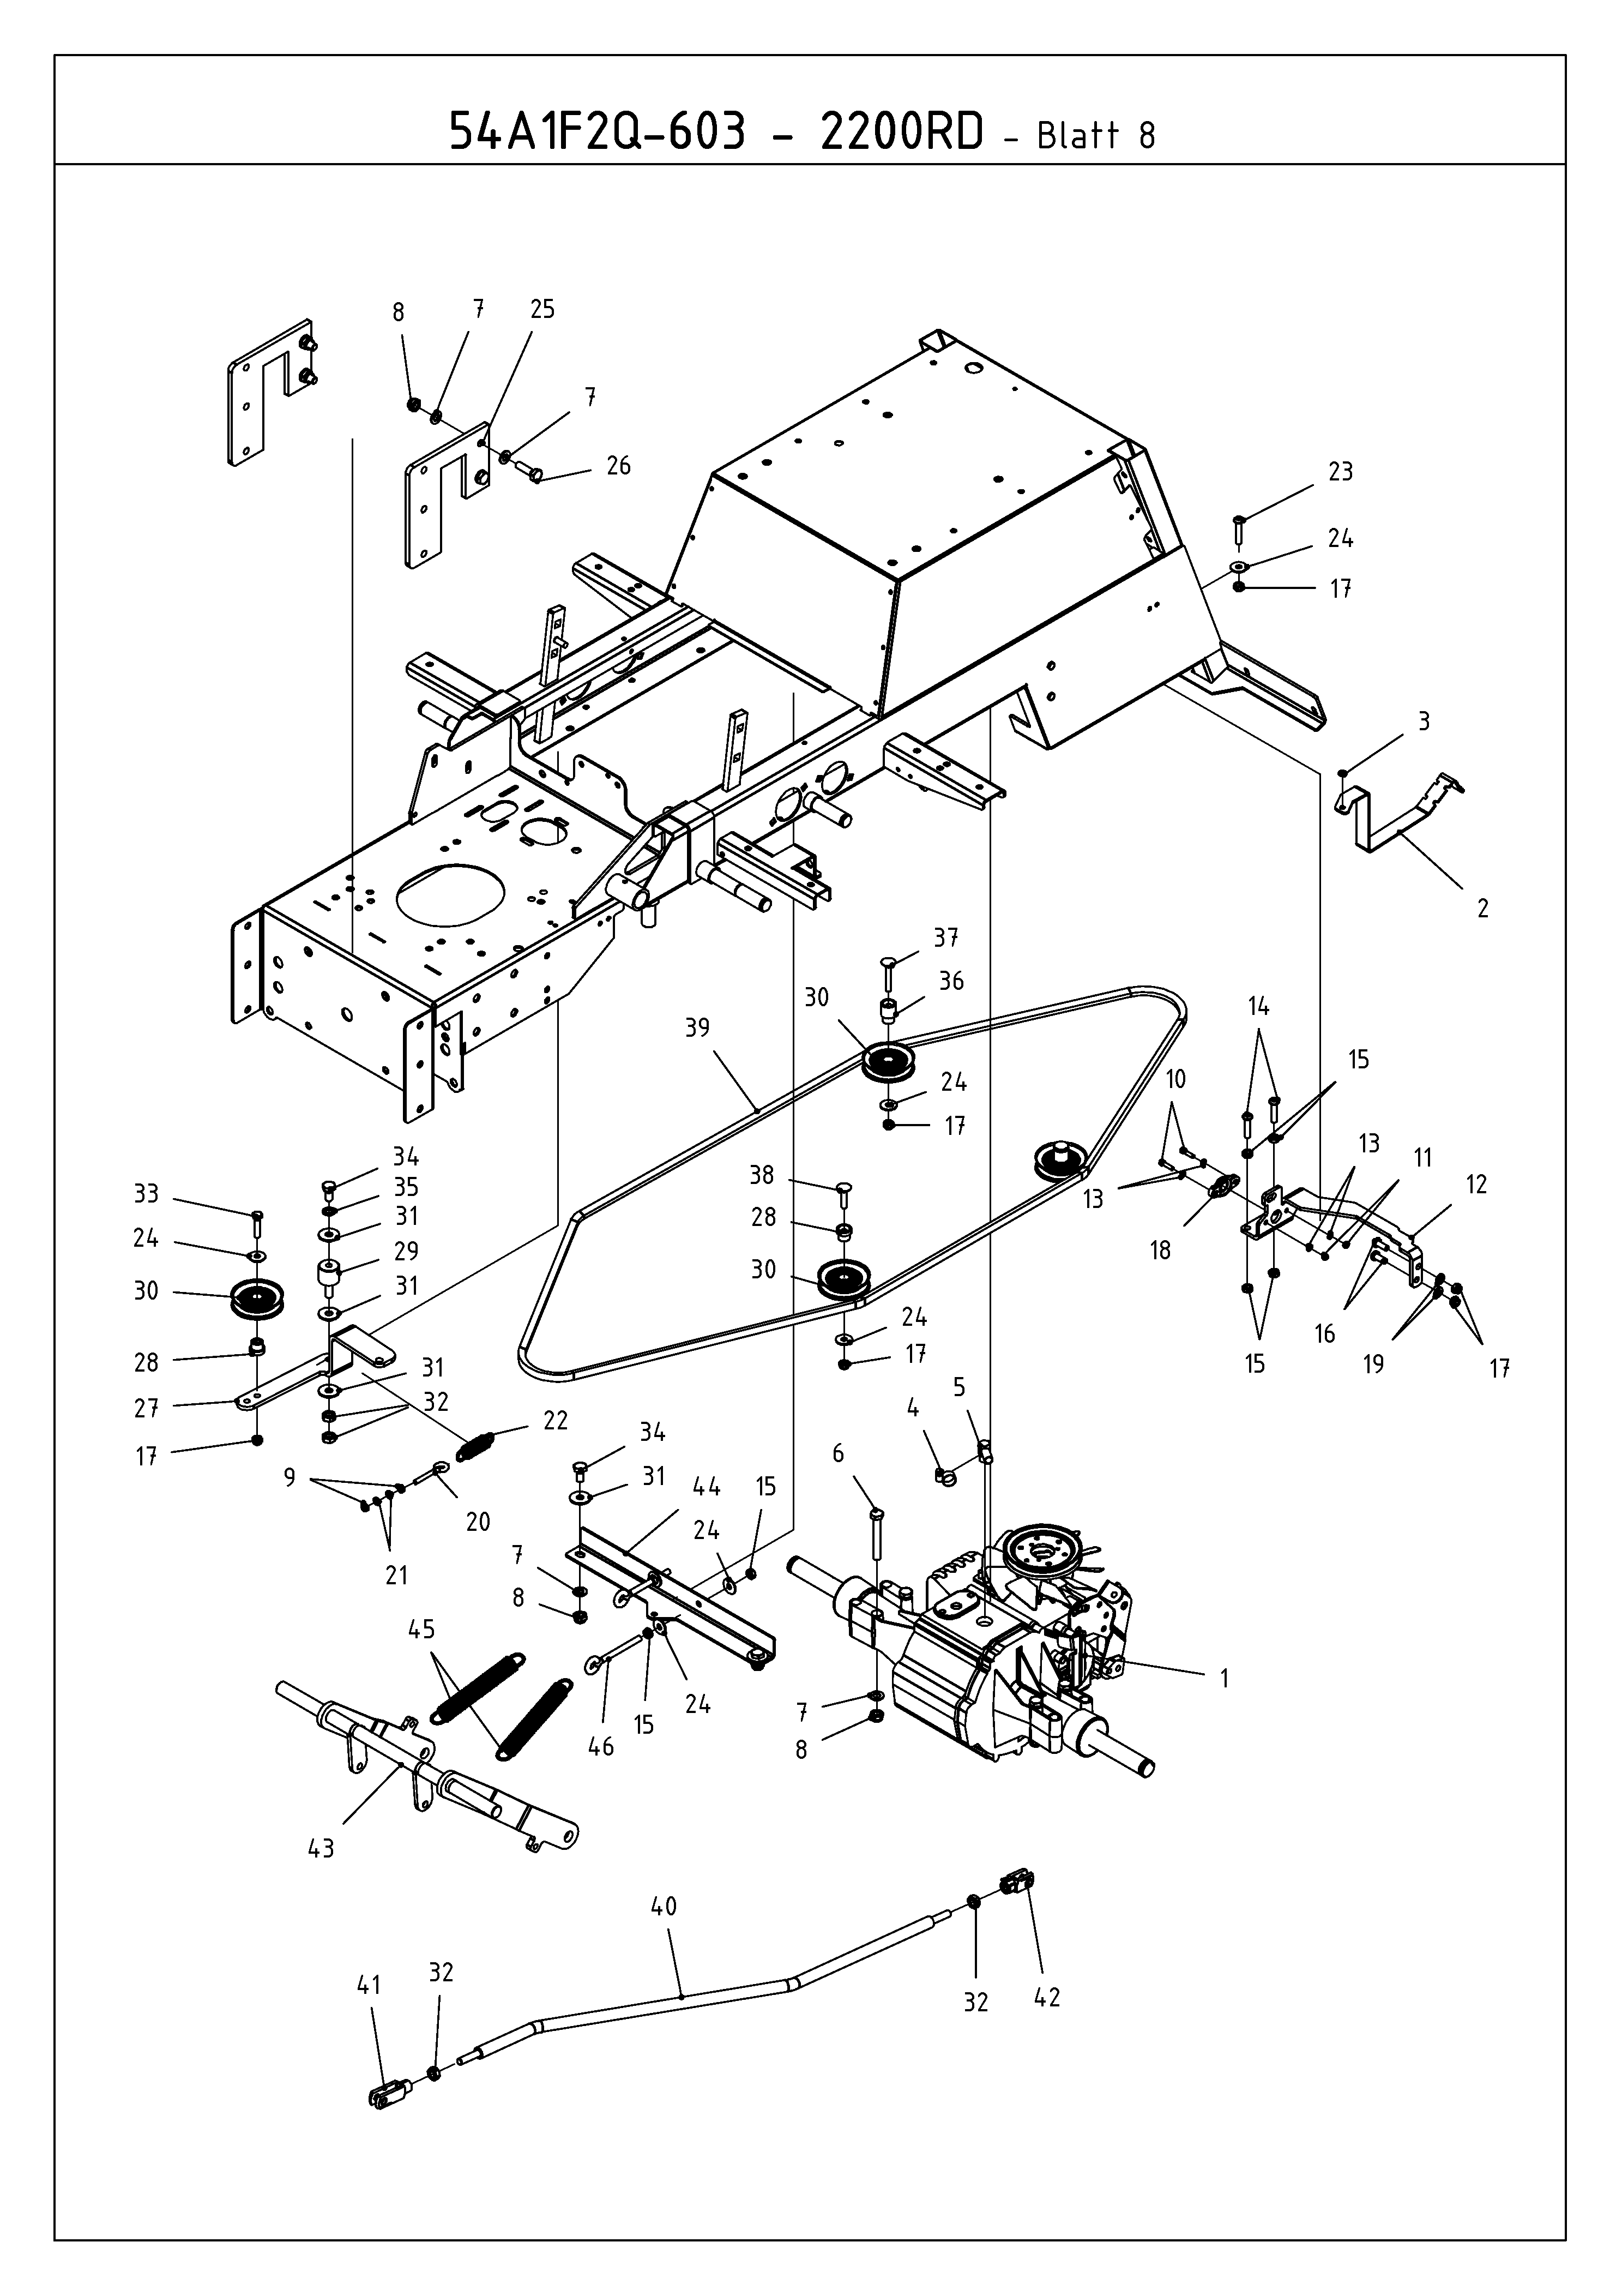 Cub Cadet, Kompakttraktoren, CC 2200 RD 2 WD, 54A1F2Q-603 (2010), Fahrantrieb, Mähwerksaushebung, MTD Ersatzteil-Zeichnungen